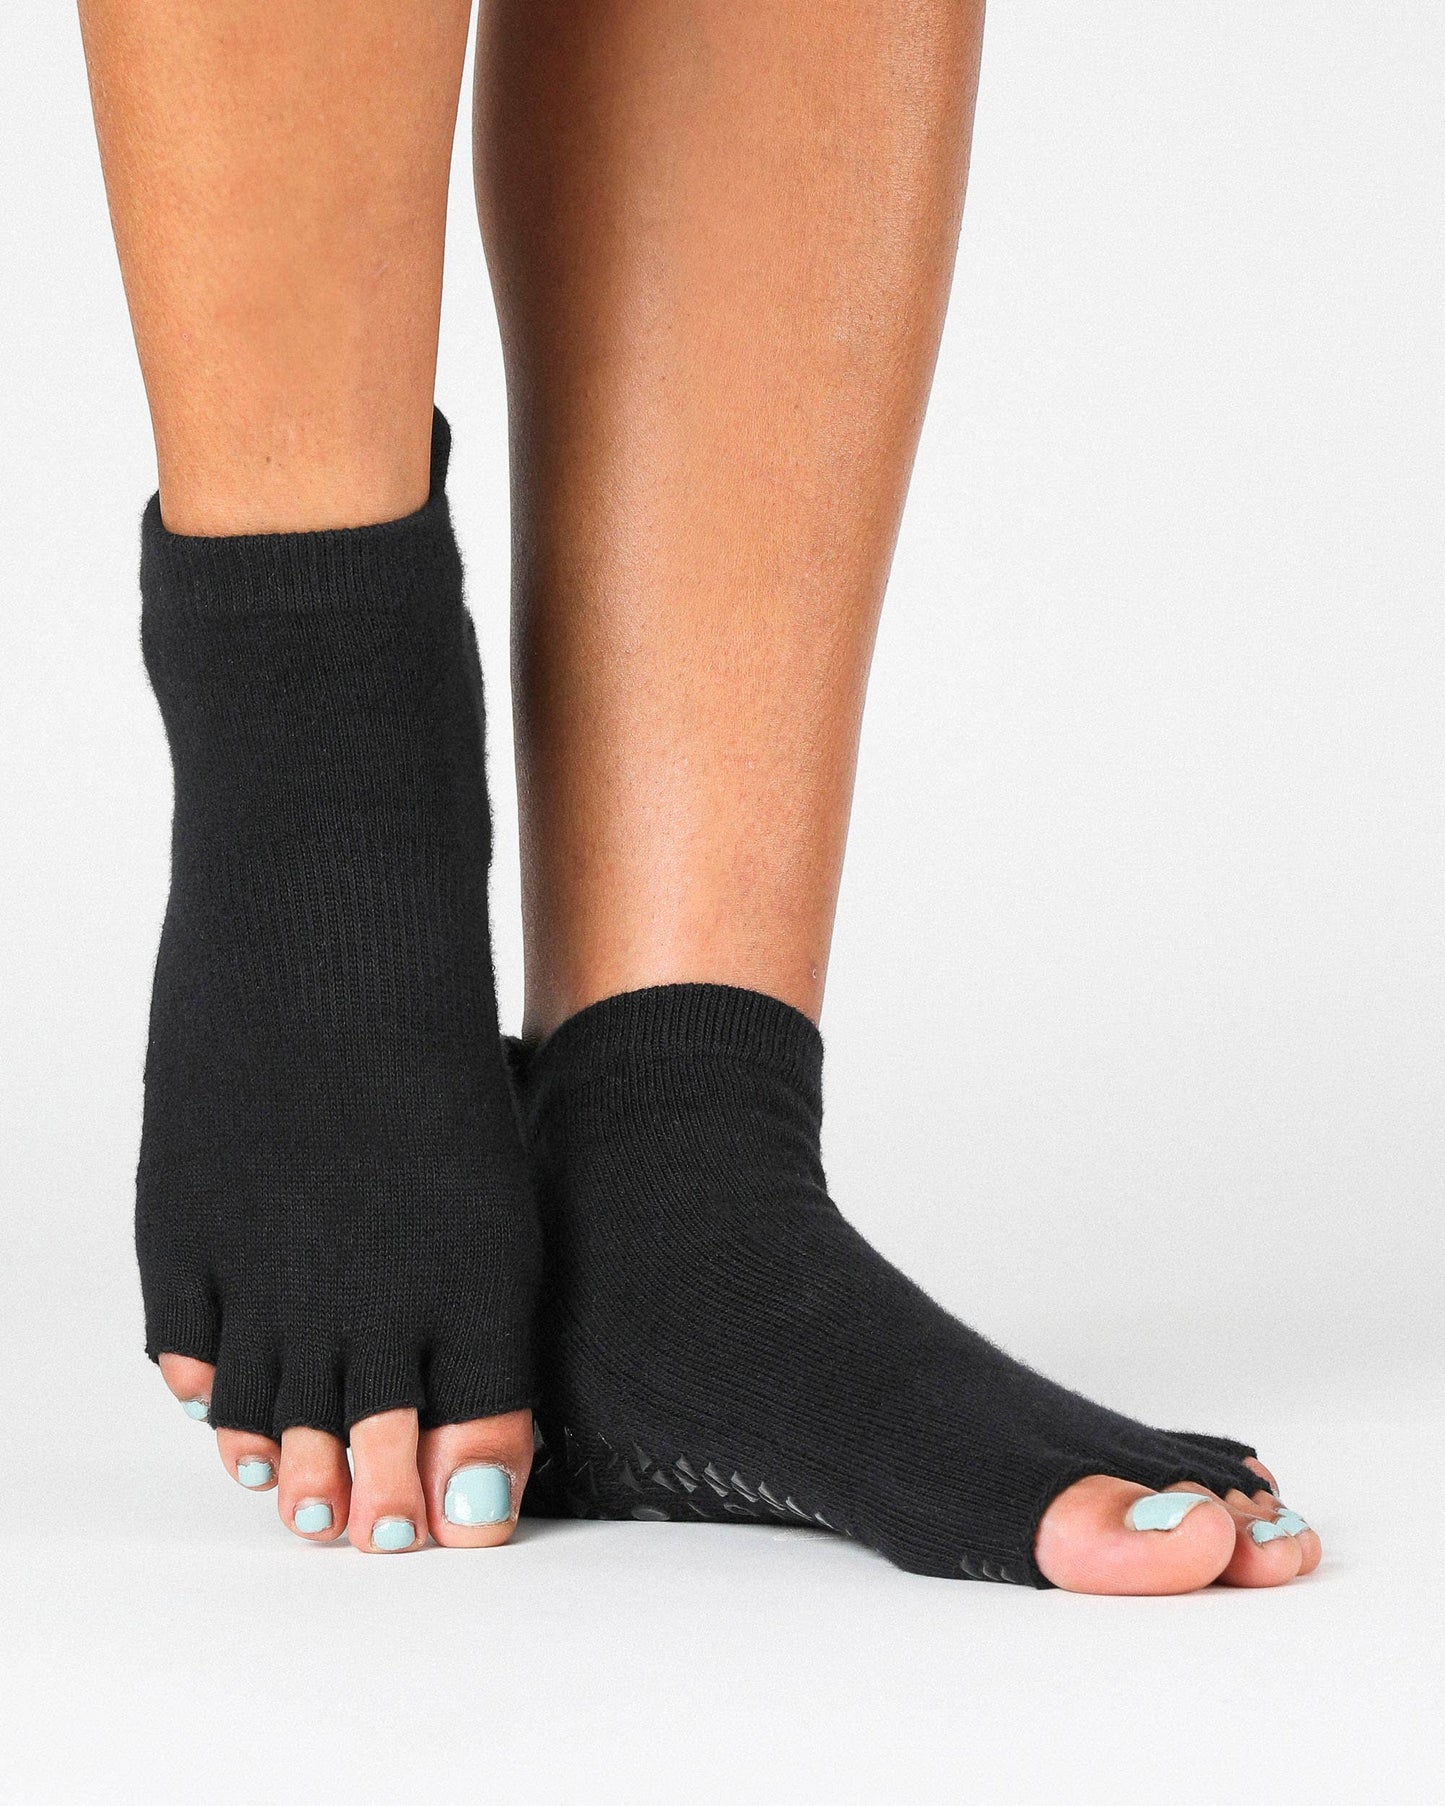 Basal Toeless Full Foot Grip Sock: S/M / Sand